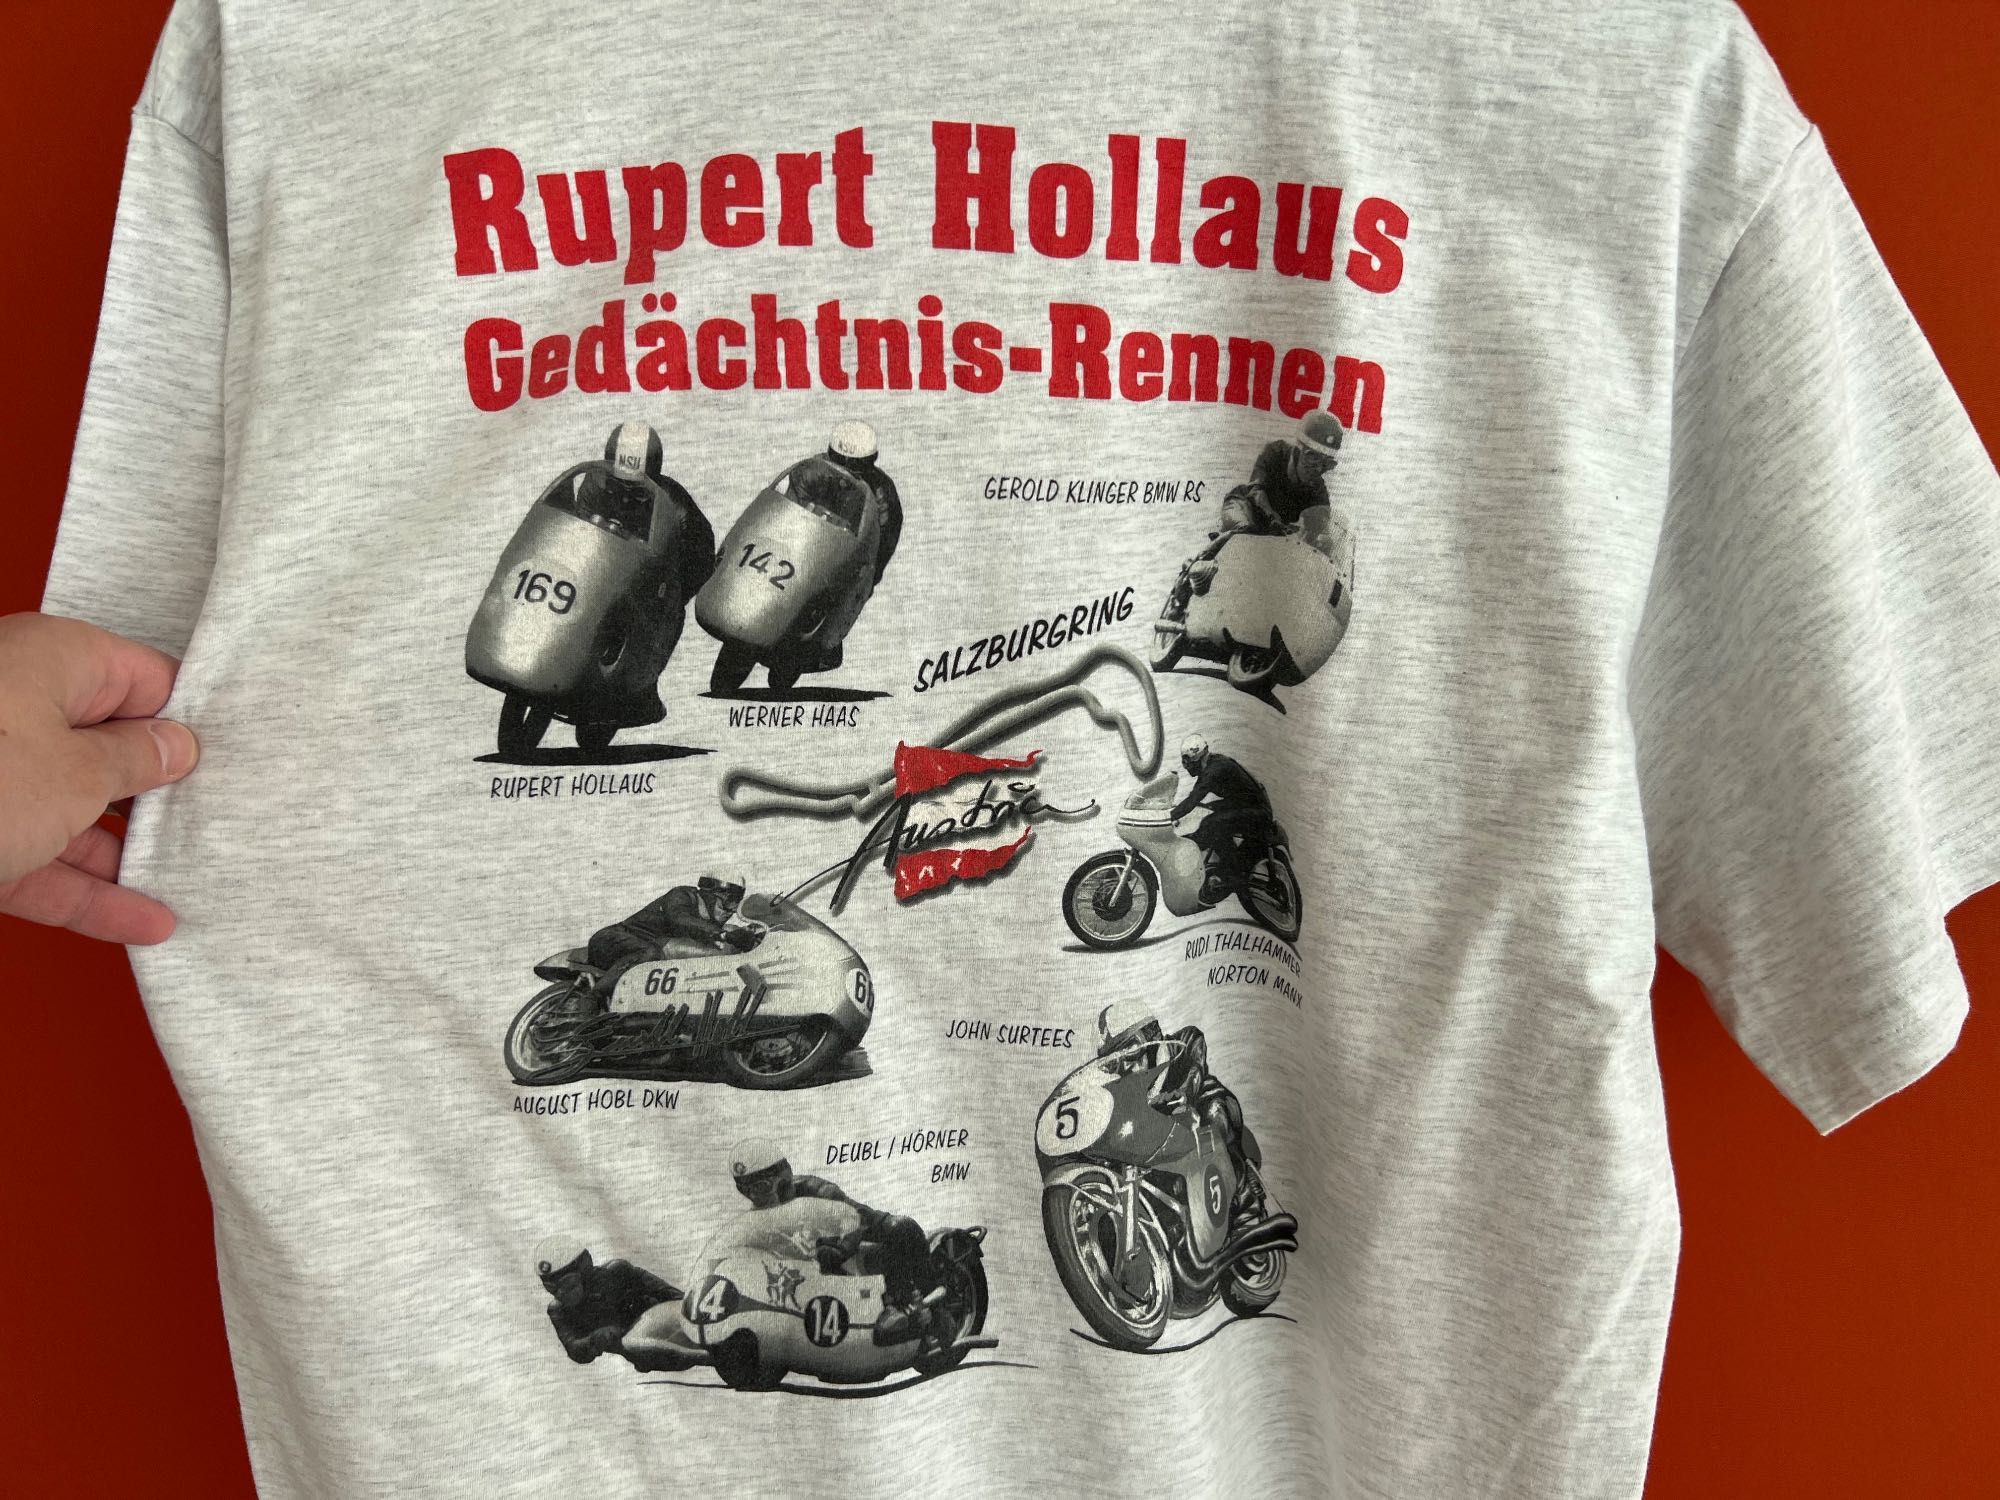 MotoGP Merch Rupert Hollaus оригинал мужская футболка мерч размер M